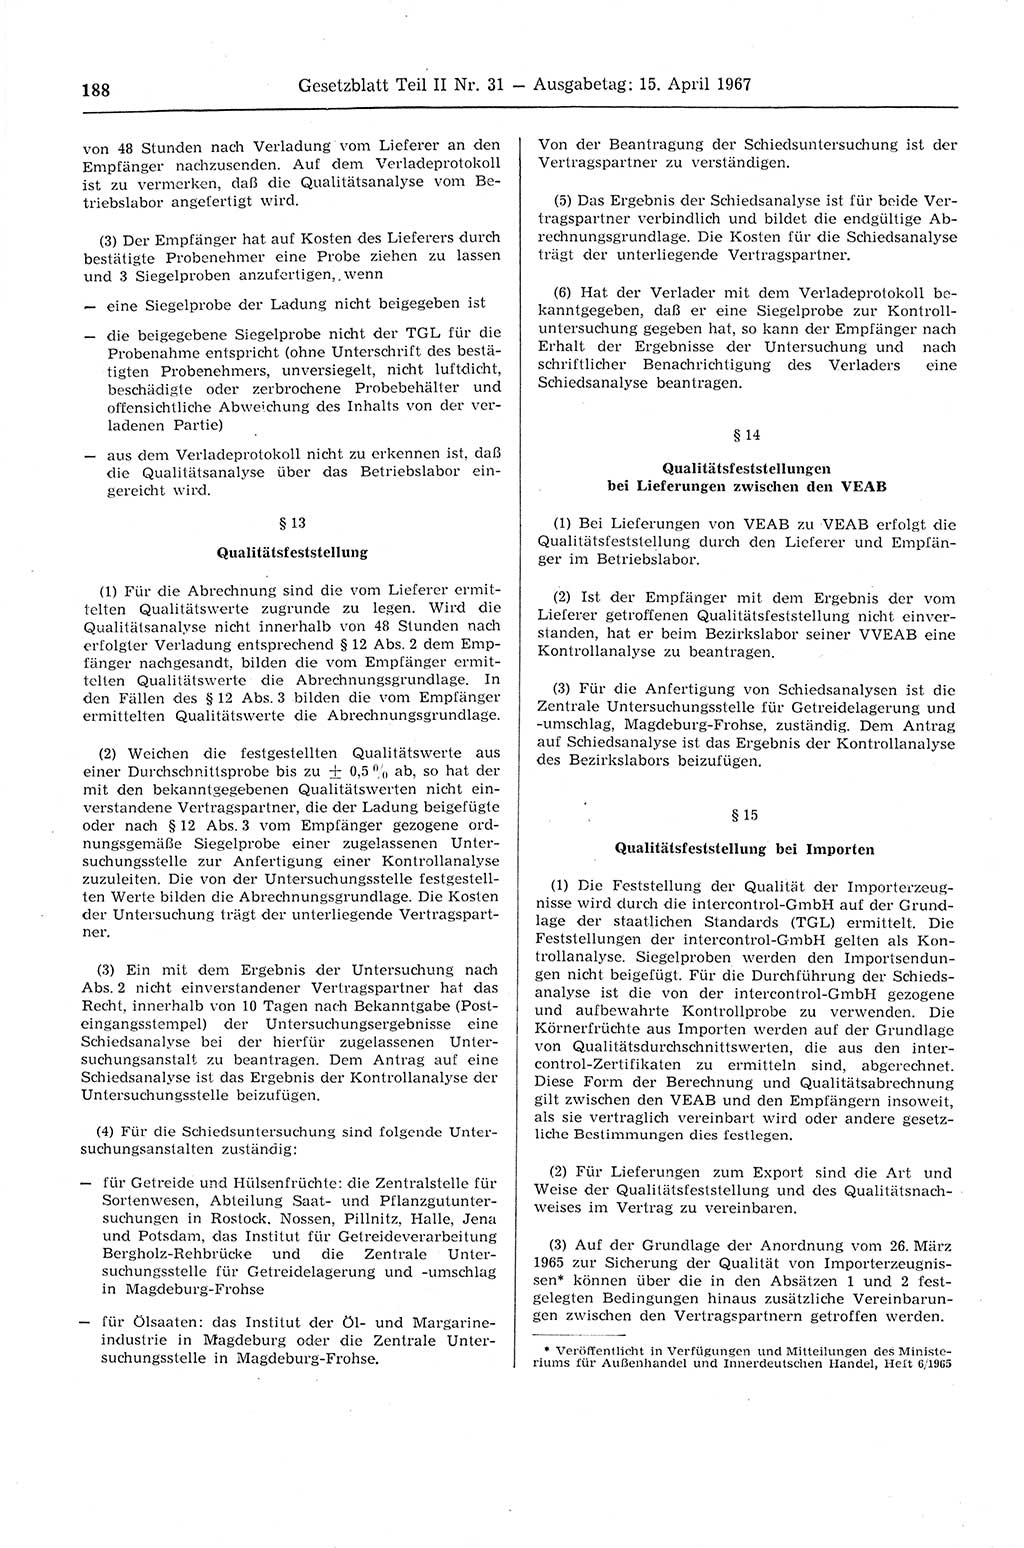 Gesetzblatt (GBl.) der Deutschen Demokratischen Republik (DDR) Teil ⅠⅠ 1967, Seite 188 (GBl. DDR ⅠⅠ 1967, S. 188)